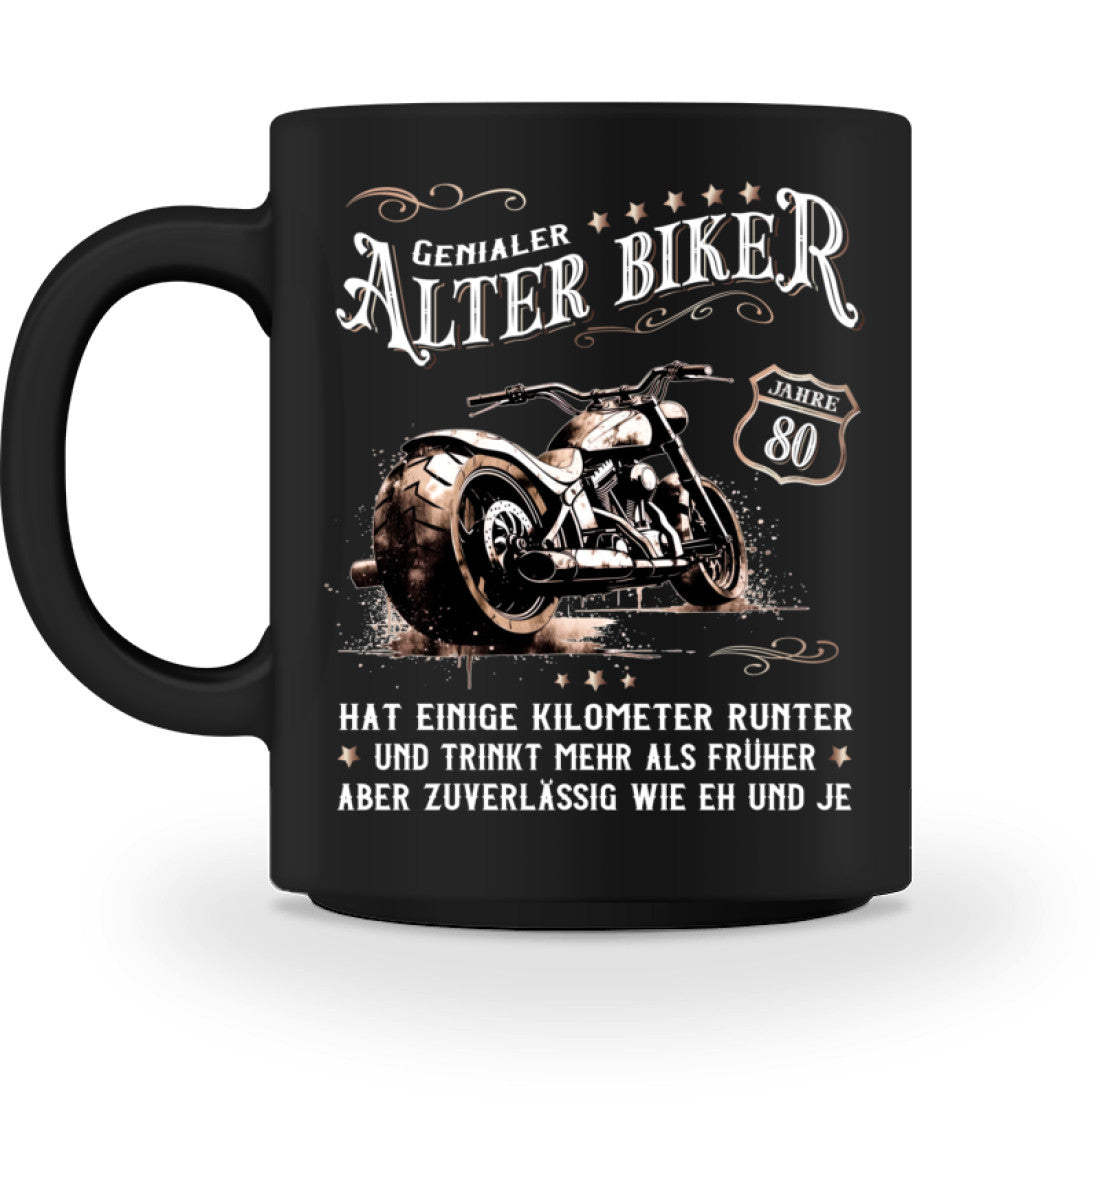 Eine Biker Geburtstags-Tasse für Motorradfahrer, von Wingbikers, mit dem beidseitigen Aufdruck, Alter Biker - 80 Jahre - Einige Kilometer runter, trinkt mehr - aber zuverlässig wie eh und je, in schwarz.